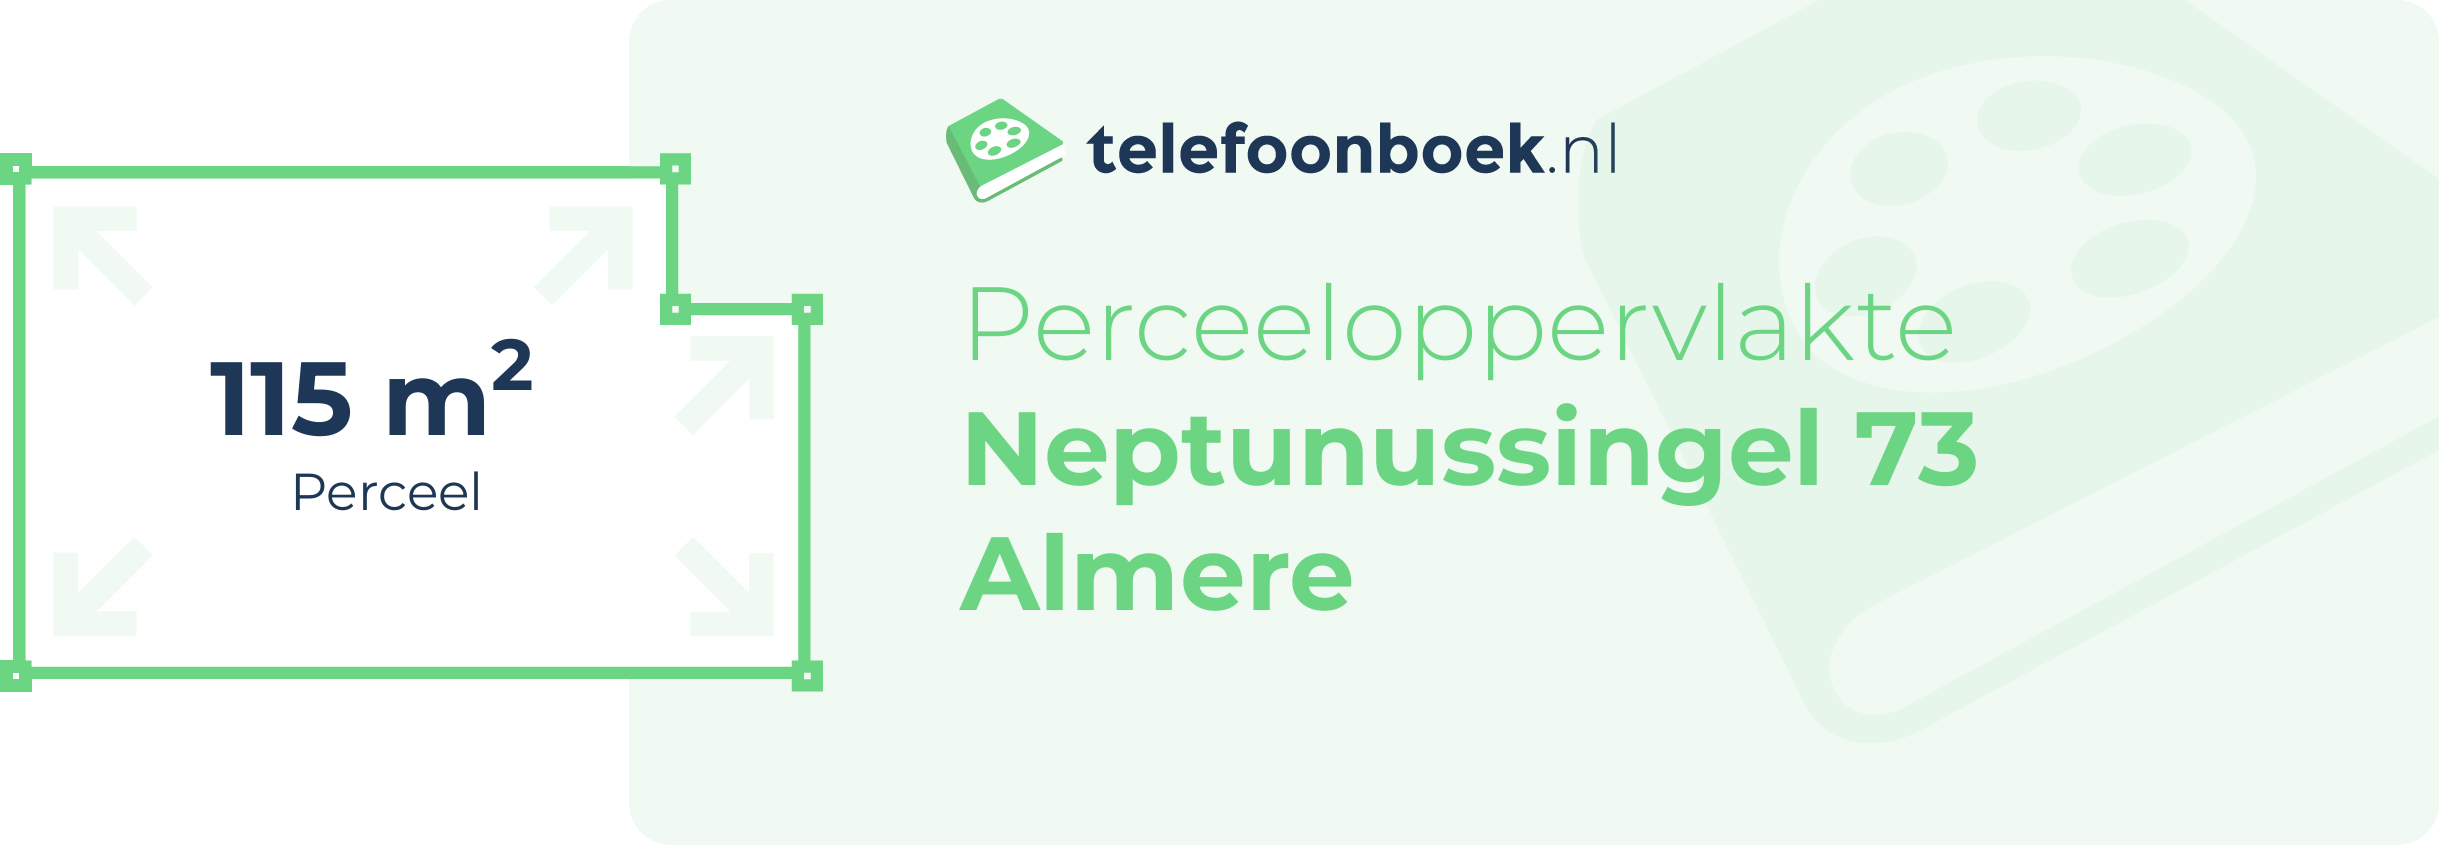 Perceeloppervlakte Neptunussingel 73 Almere